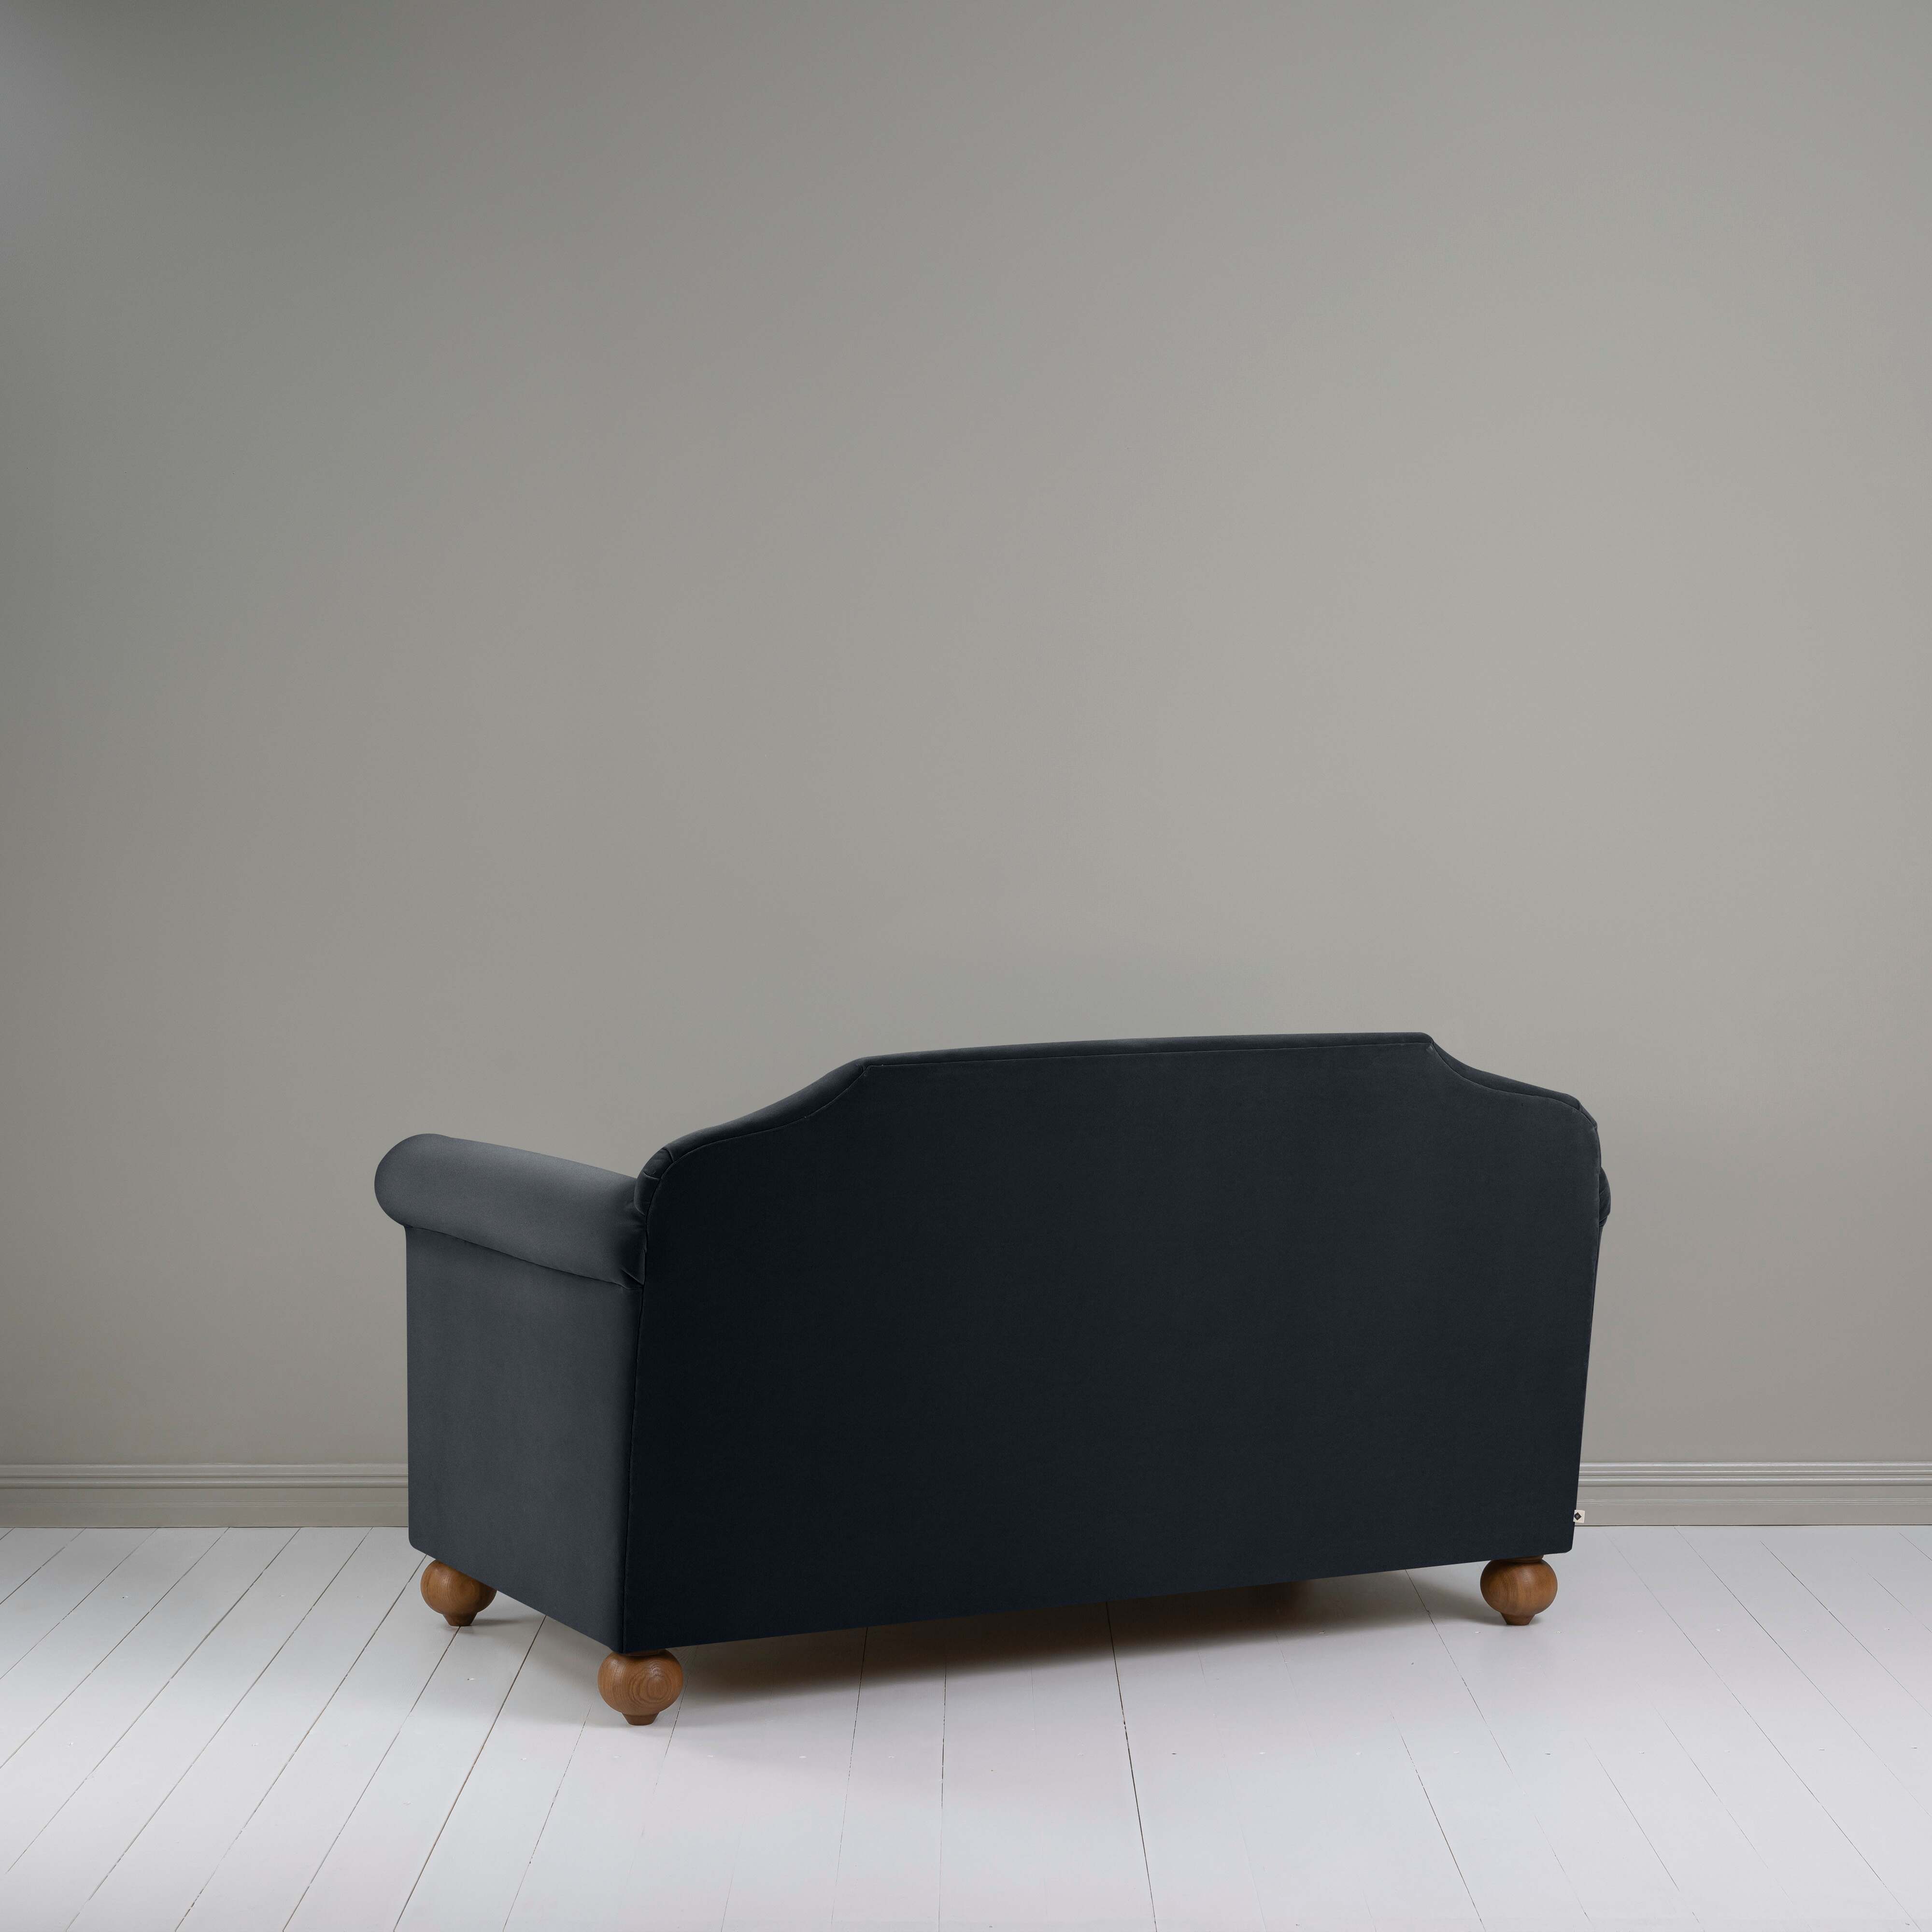  Dolittle 2 Seater Sofa in Intelligent Velvet Onyx 